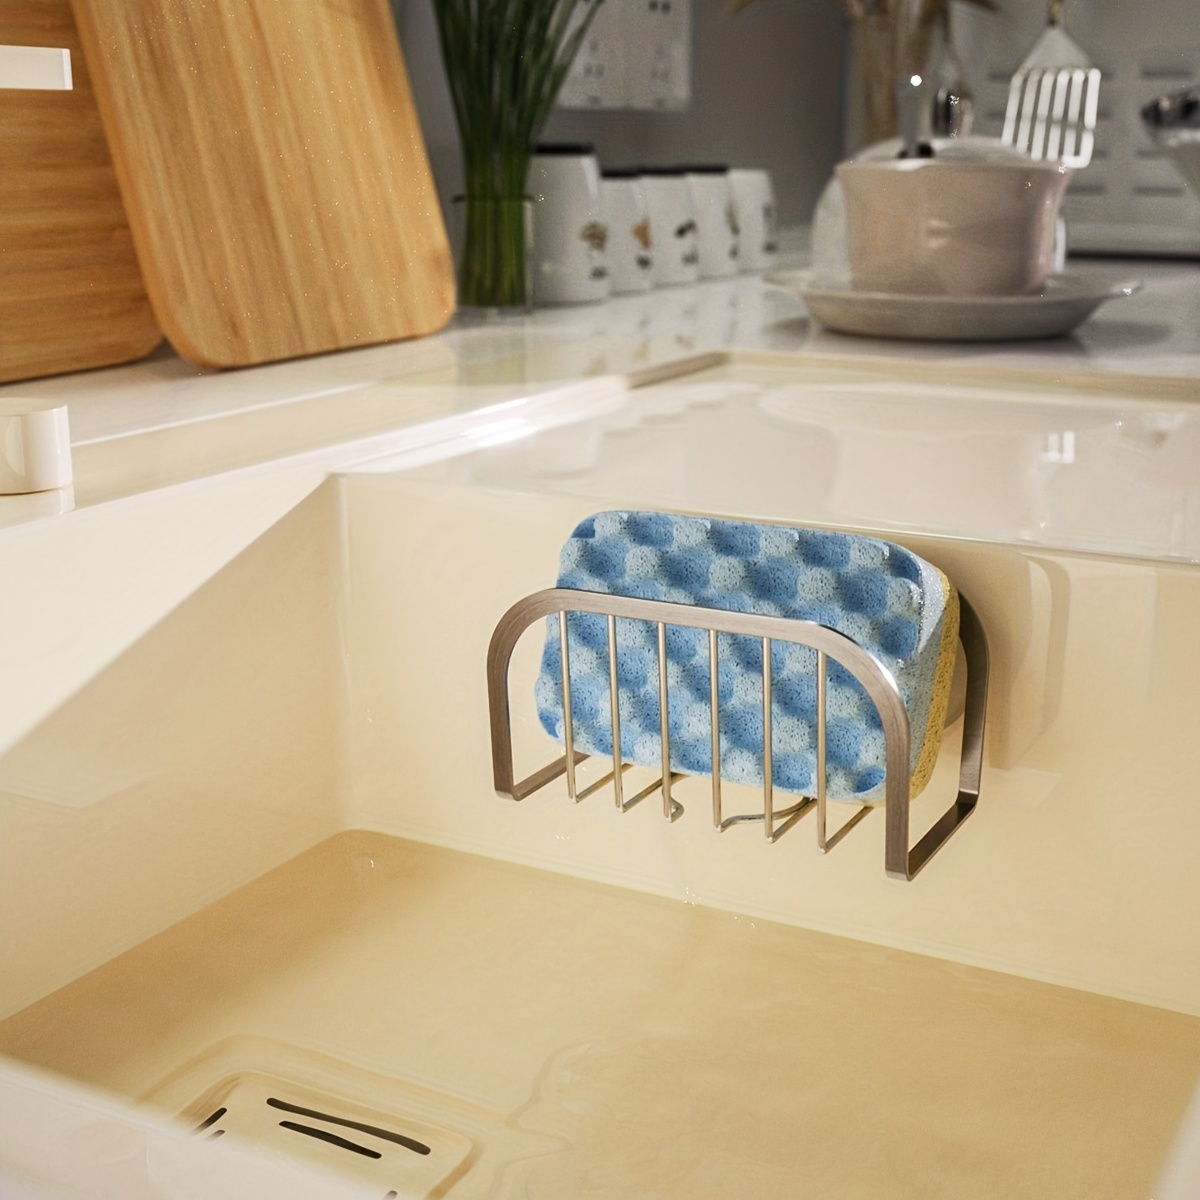 Sponge Holder Kitchen Stainless Steel Caddy Organizer Dish Draining Sink  Basket